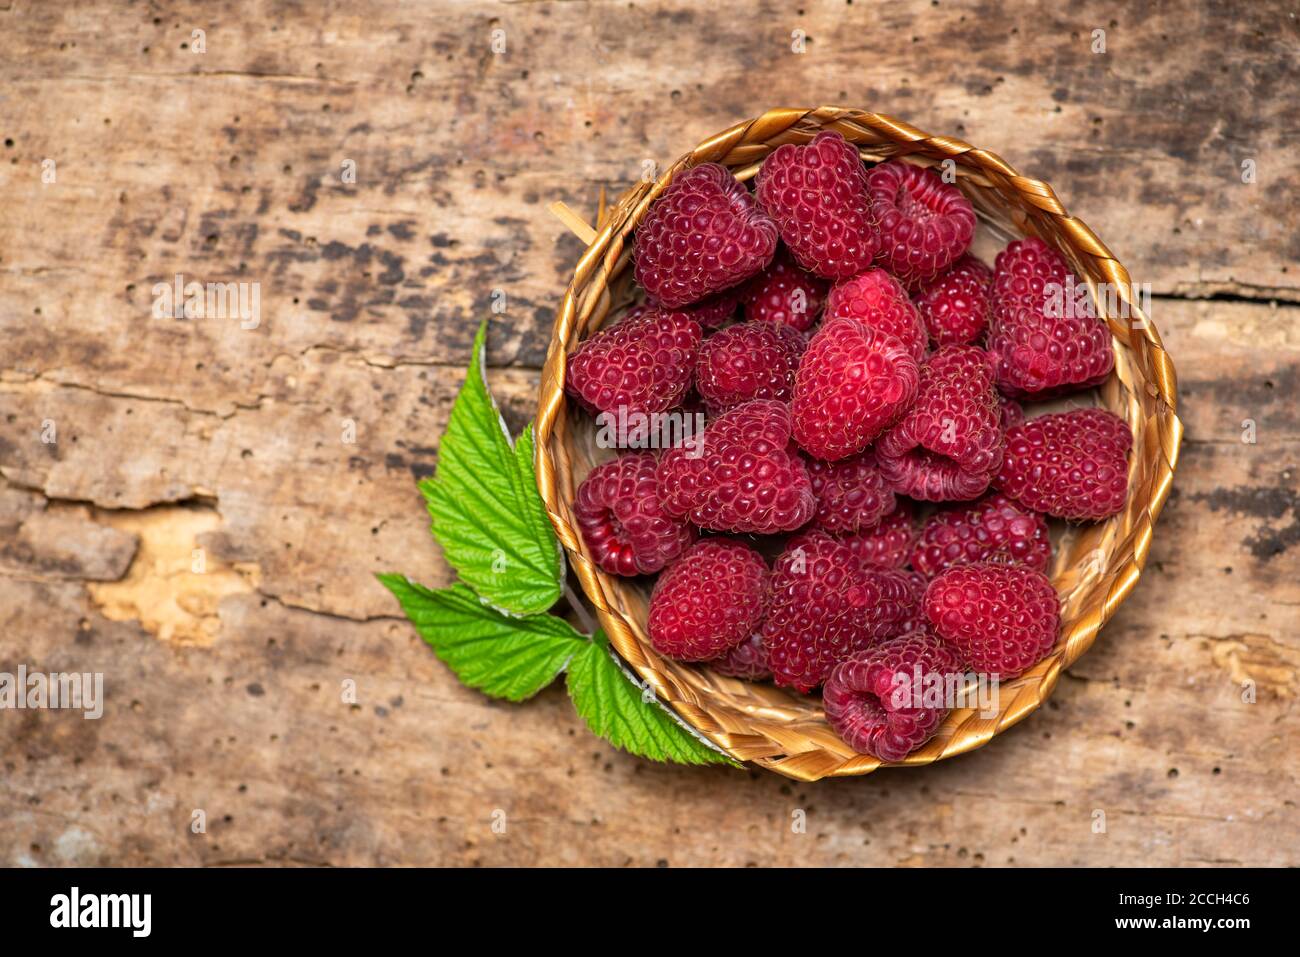 frutta fresca di lampone rosso in una ciotola Foto Stock